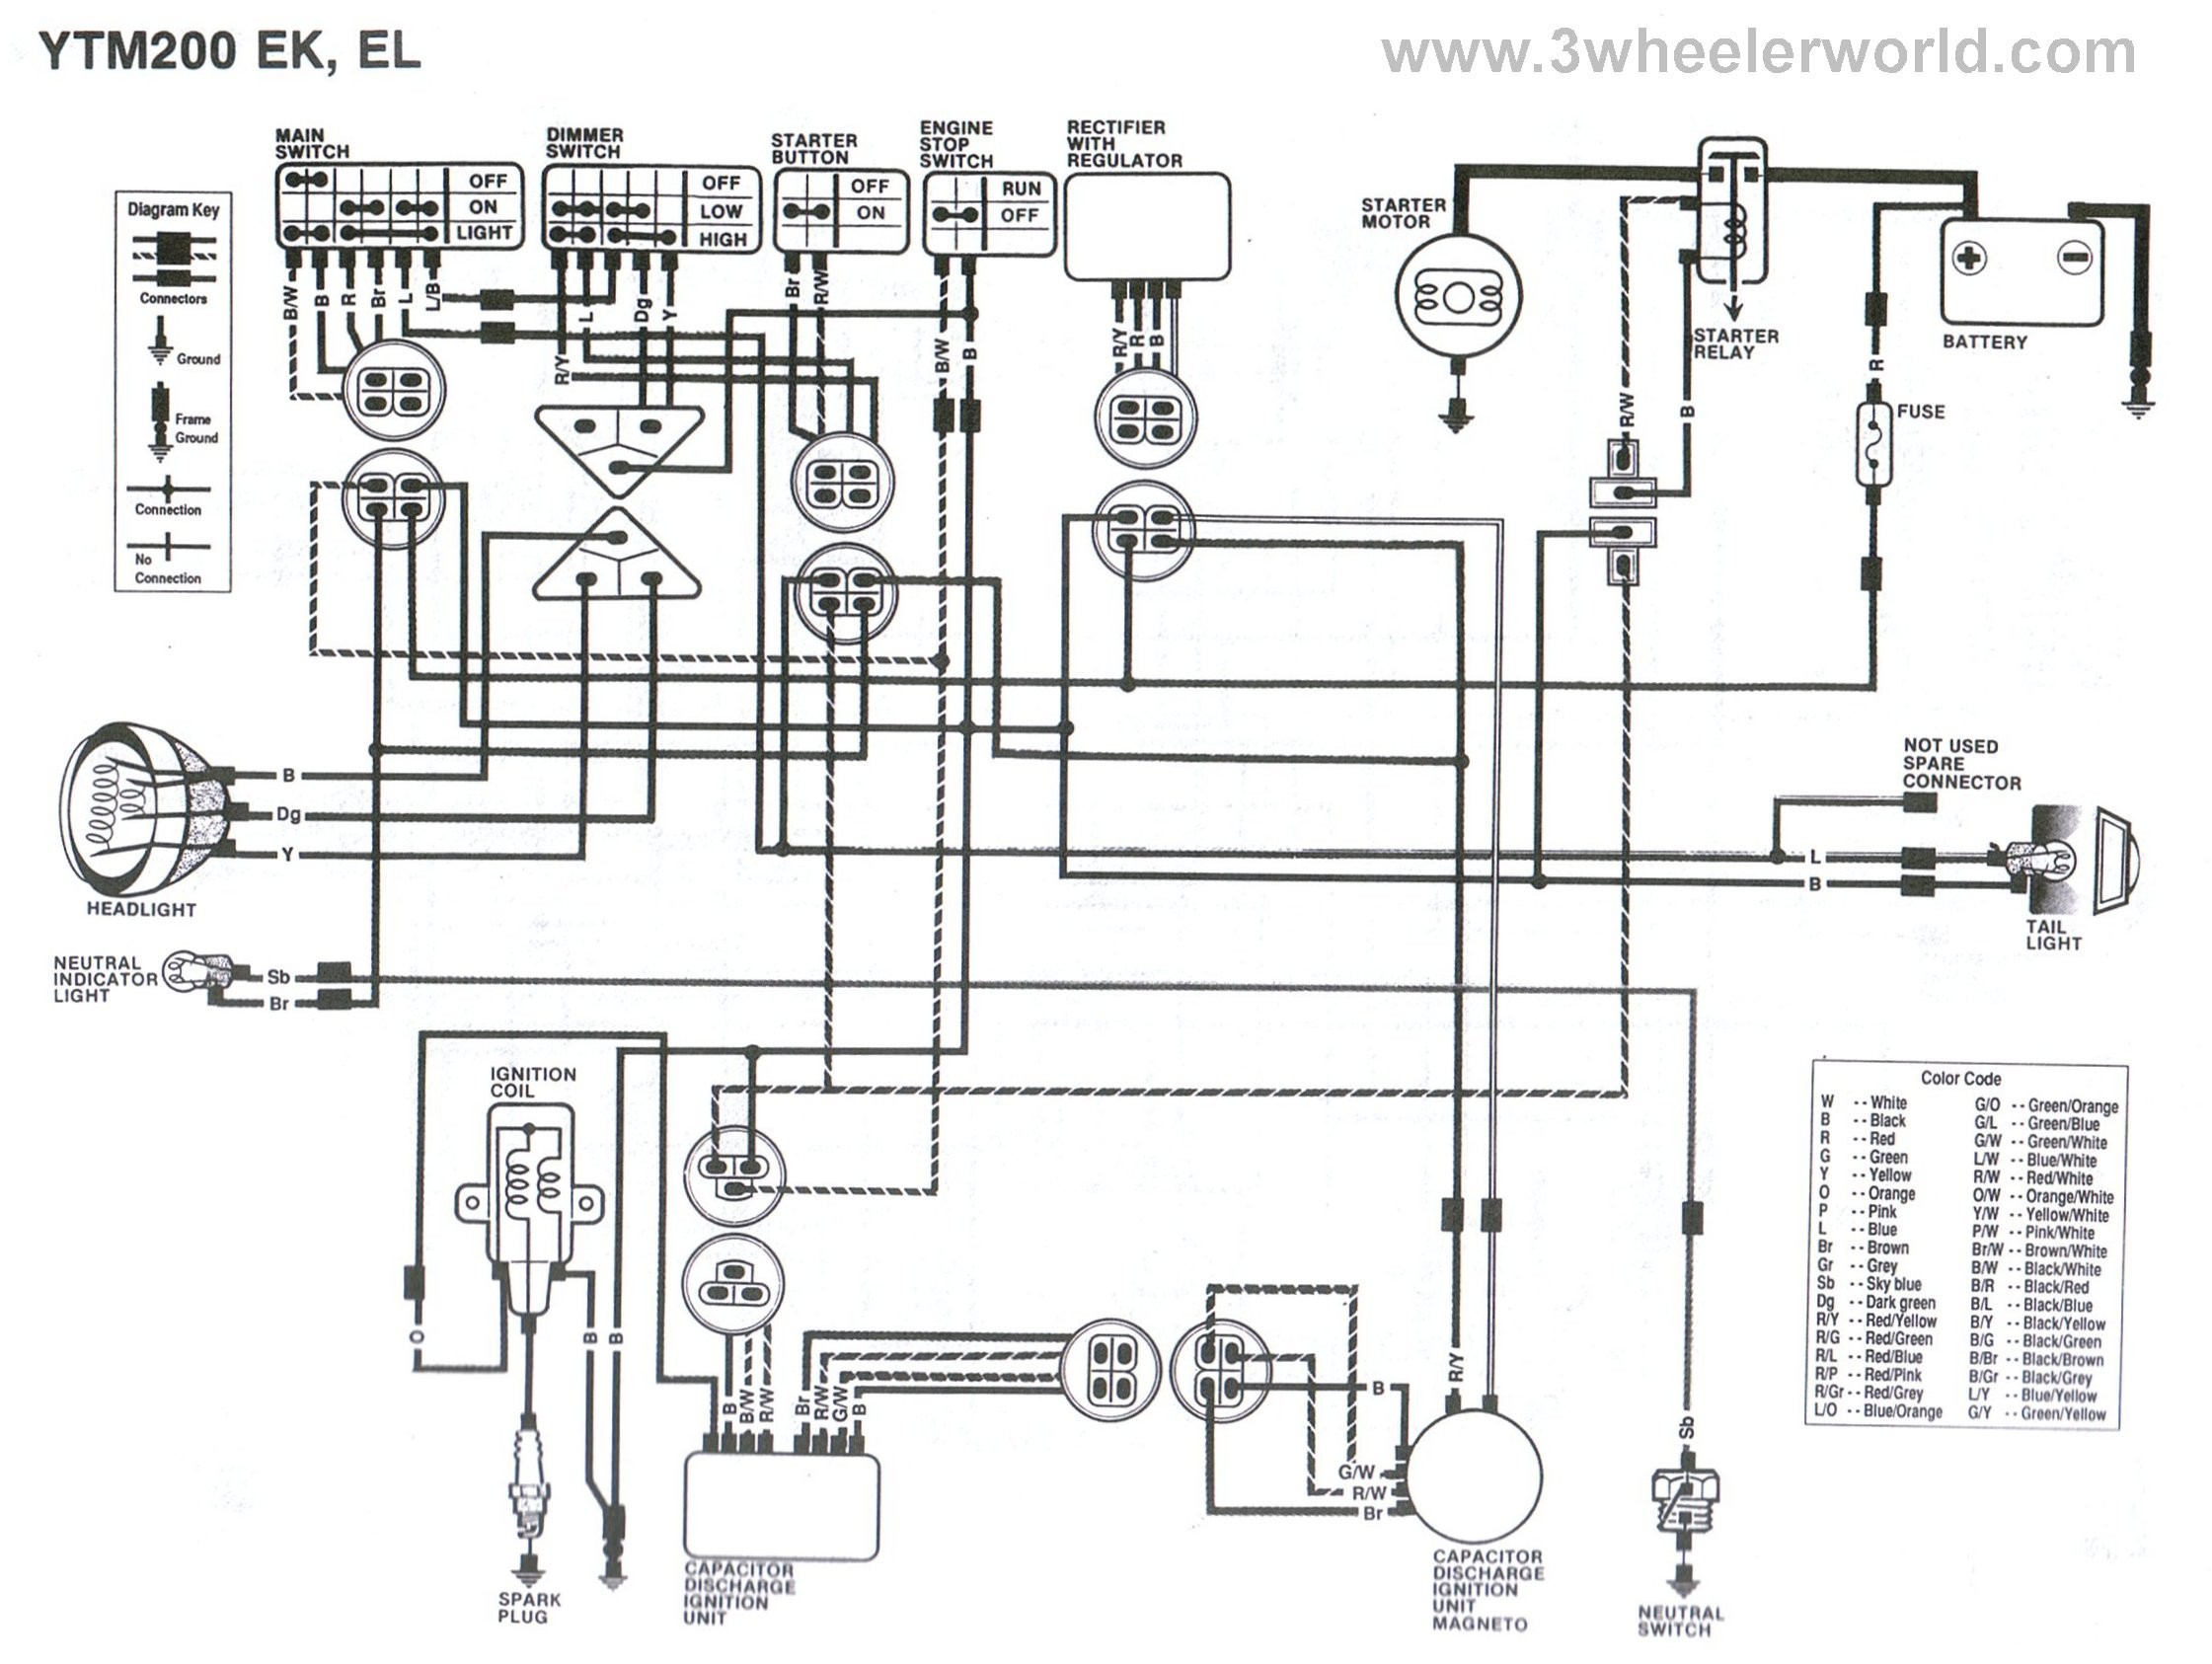 Wiring Diagram For Yamaha Blaster Fresh Yamaha Golf Cart Wiring Diagram Webtor Me At Diagrams Afif